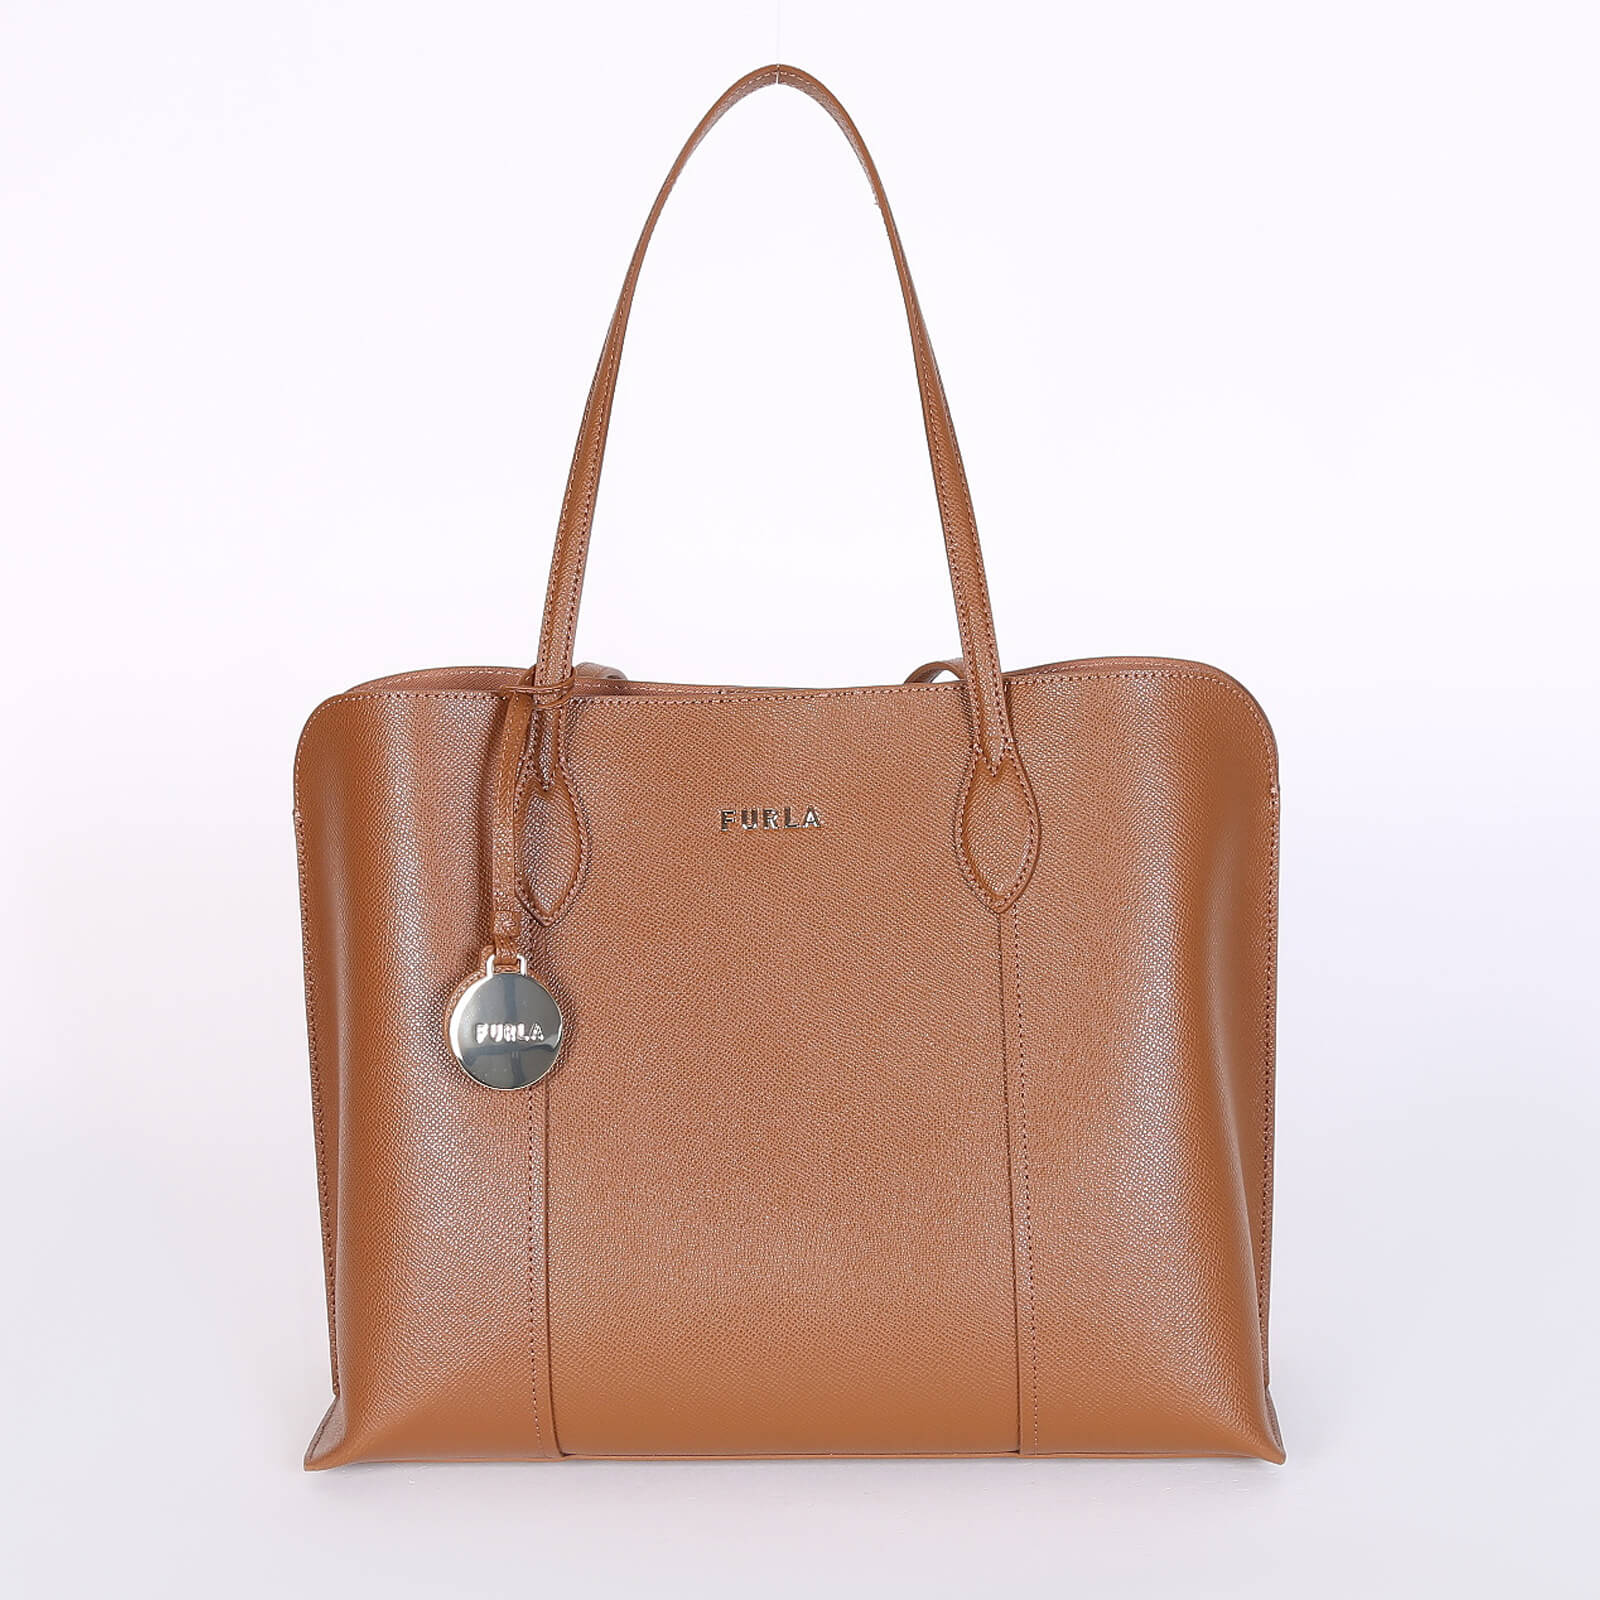 Furla Rare Vintage Large Brown Tote Bag 15”